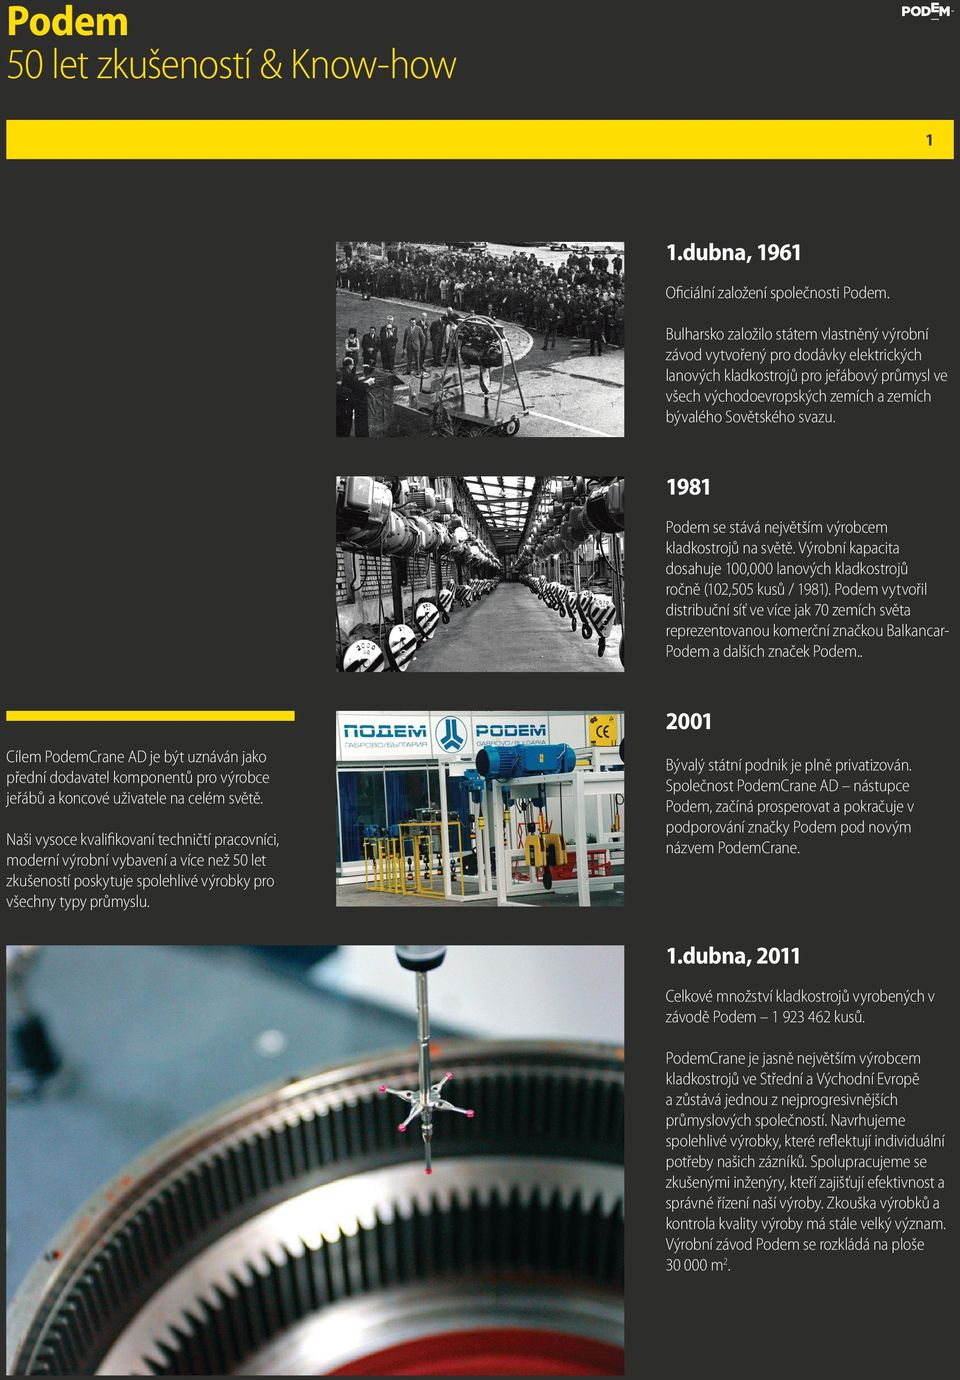 1981 Podem se stává největším výrobcem kladkostrojů na světě. Výrobní kapacita dosahuje 100,000 lanových kladkostrojů ročně (102,505 kusů / 1981).